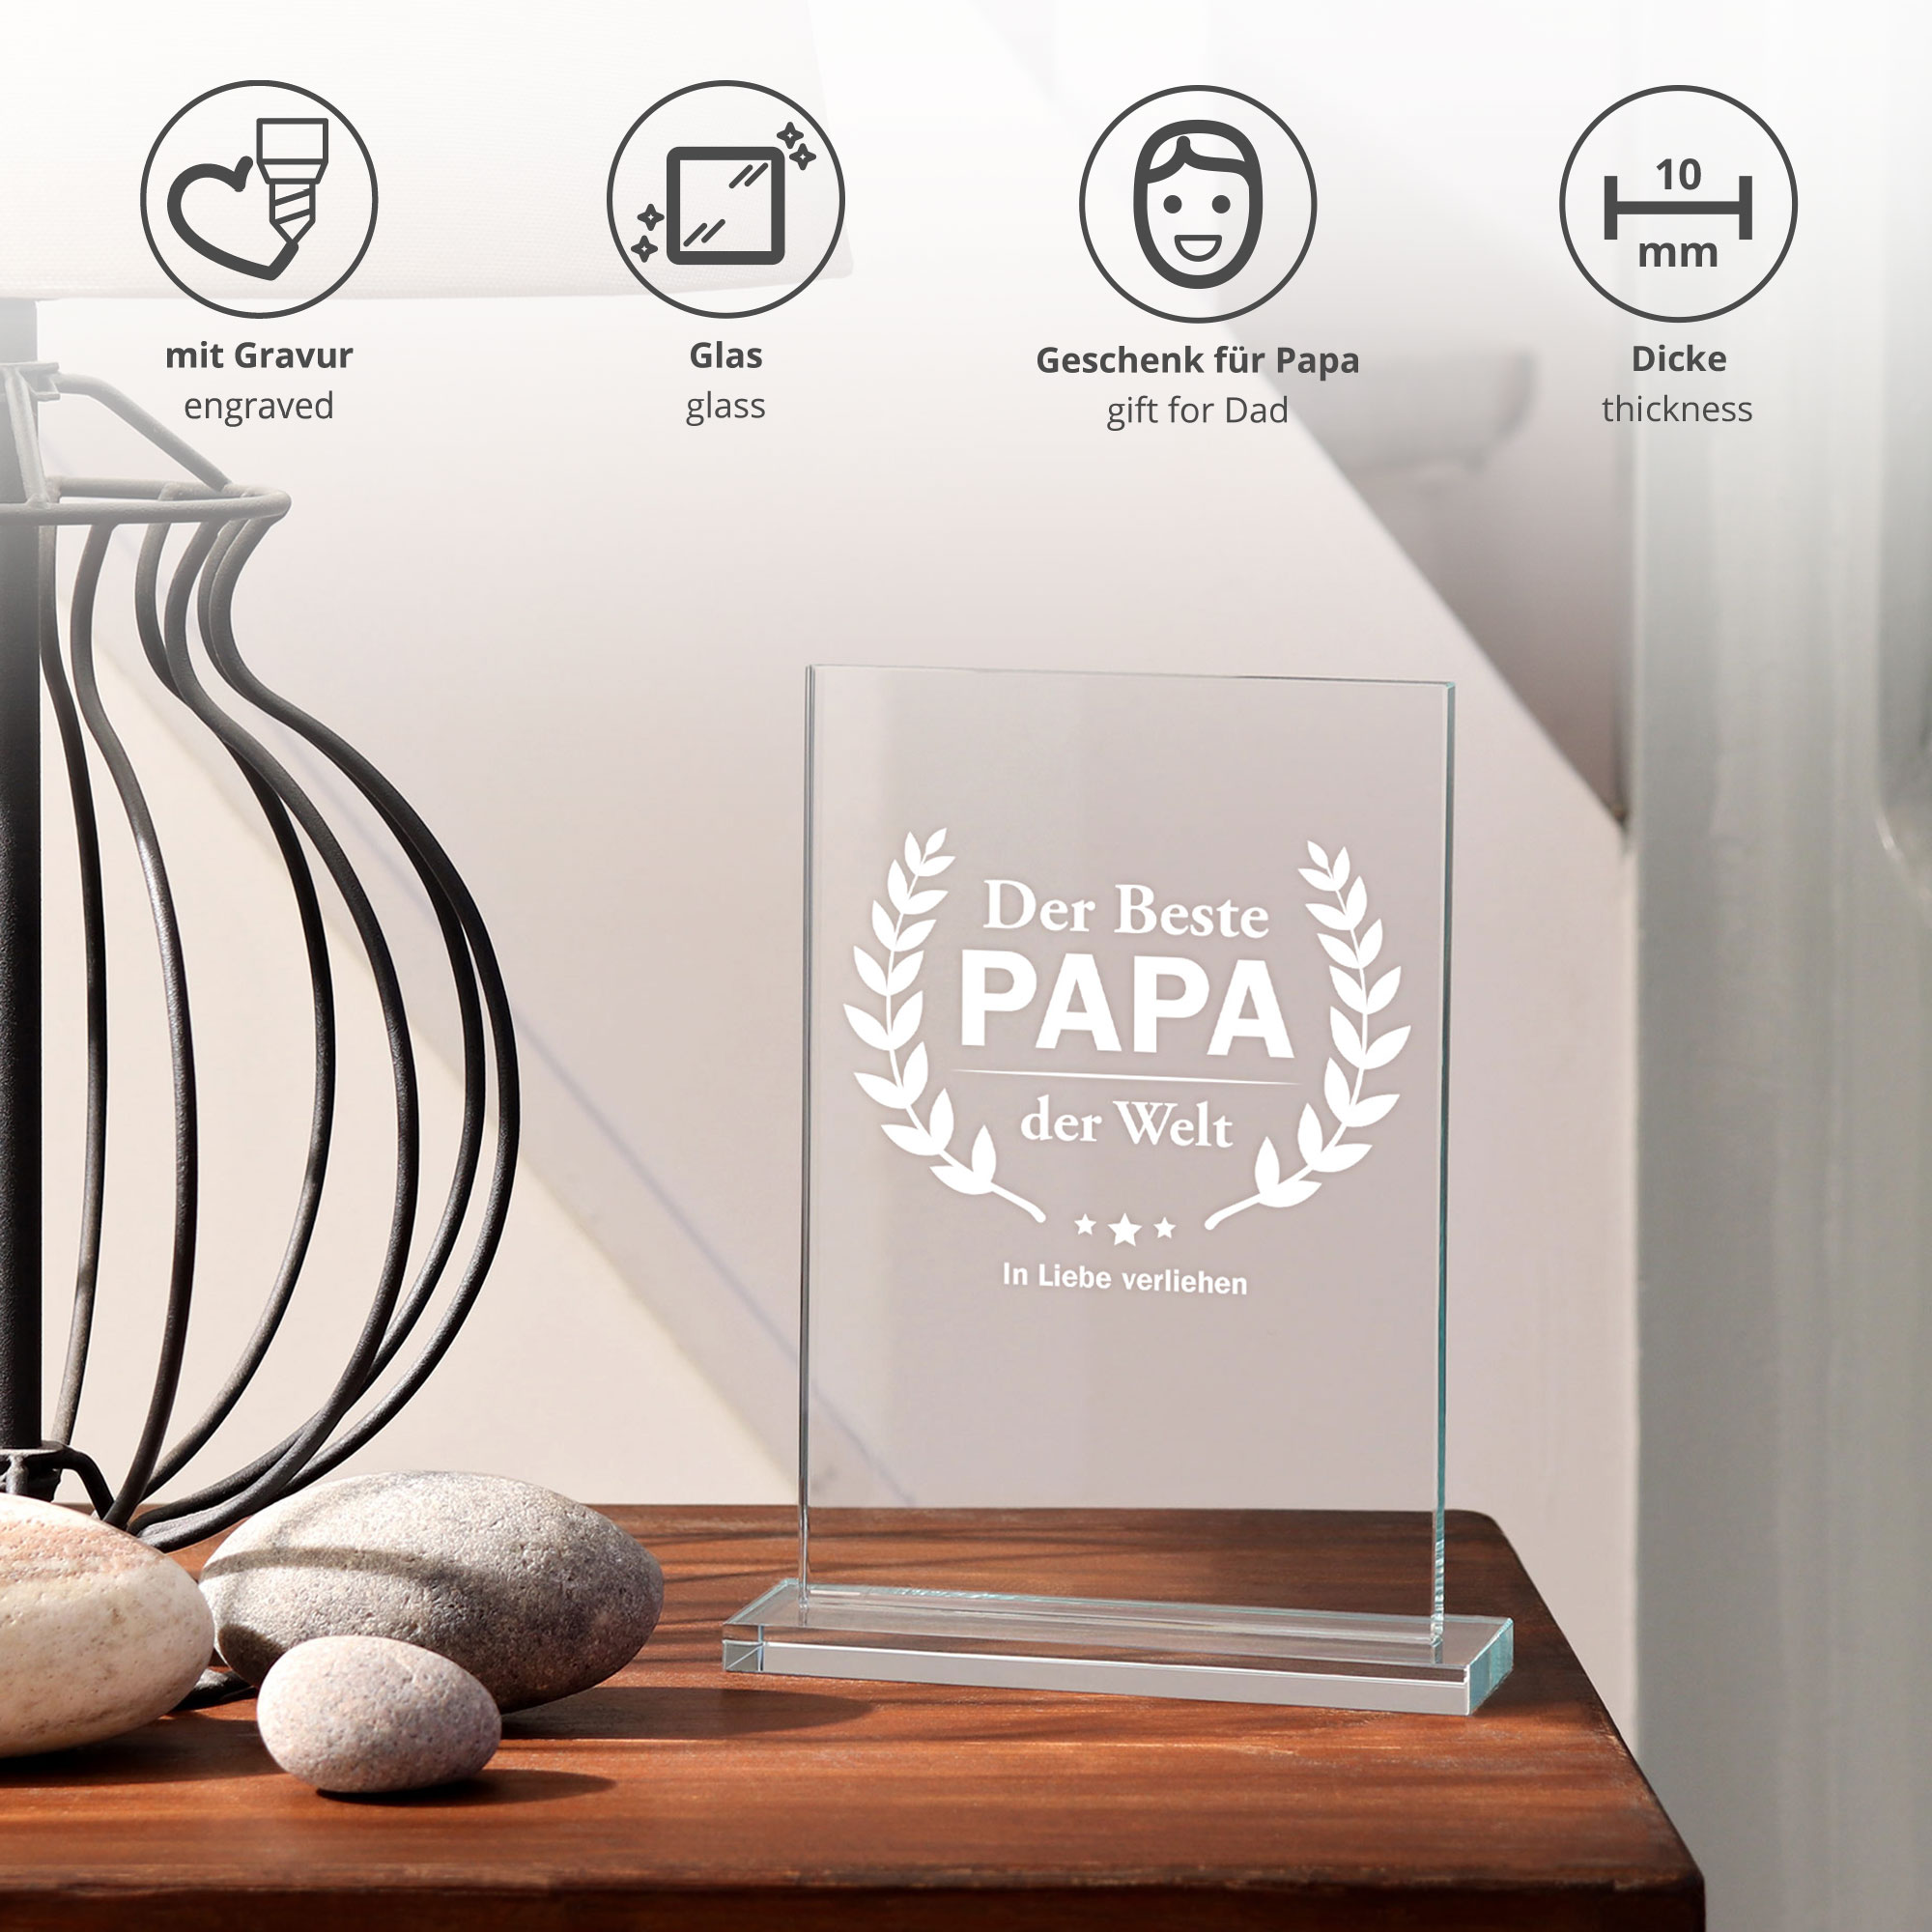 Glaspokal - Auszeichnung für besten Papa 0021-0001-DE-0004 - 3